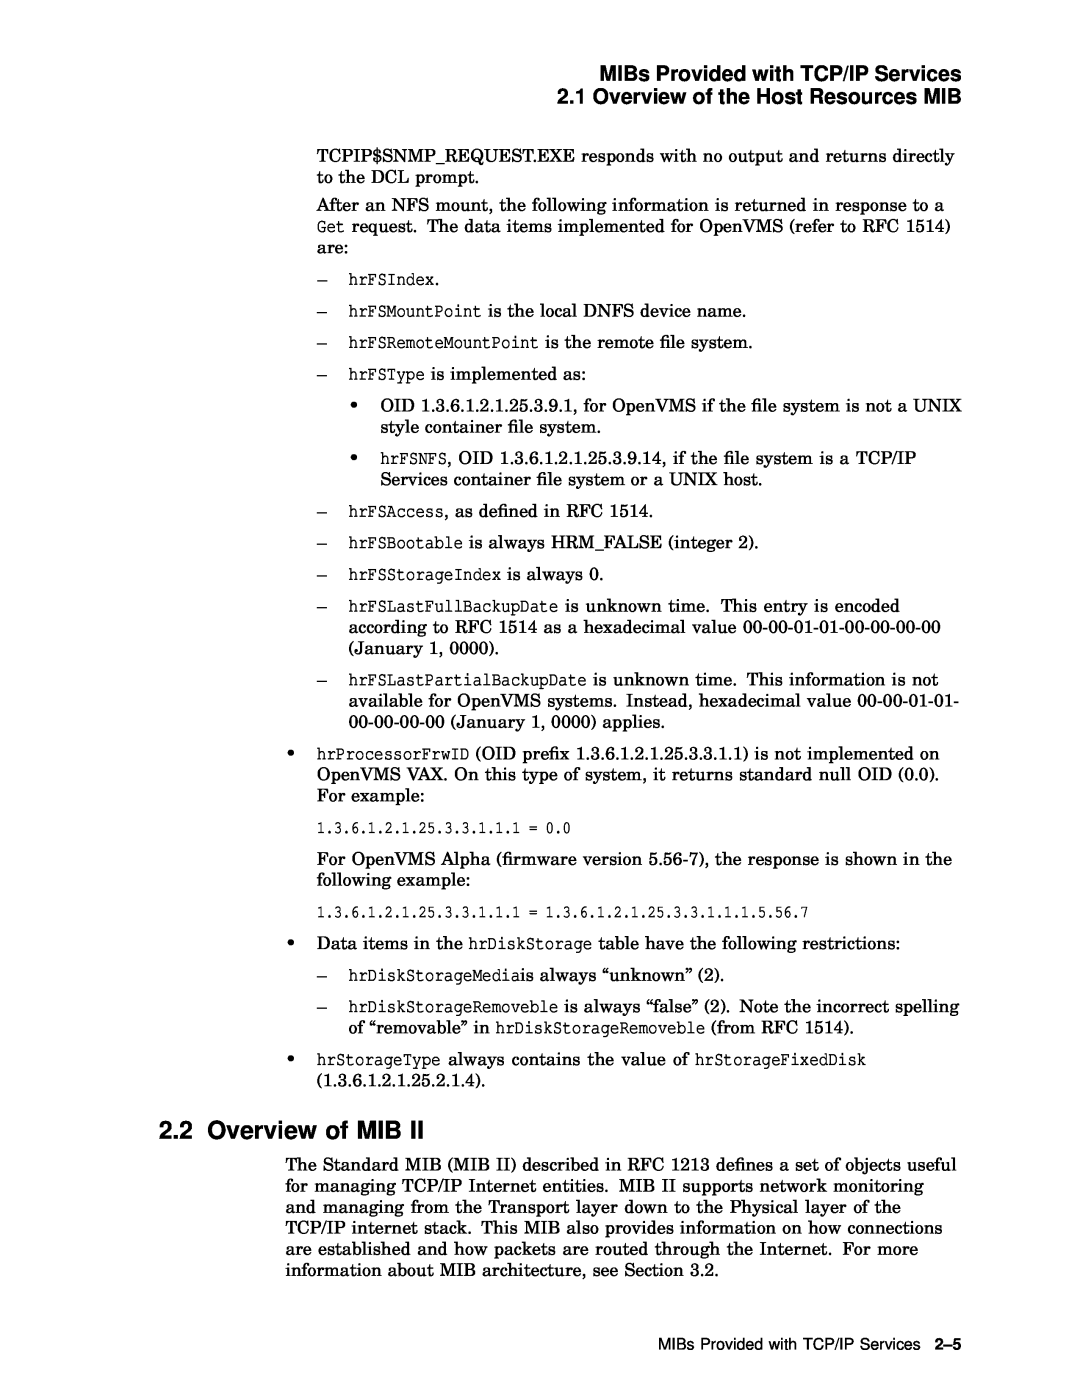 Compaq AAR04BCTE manual Overview of MIB, hrFSIndex, hrFSStorageIndex is always 